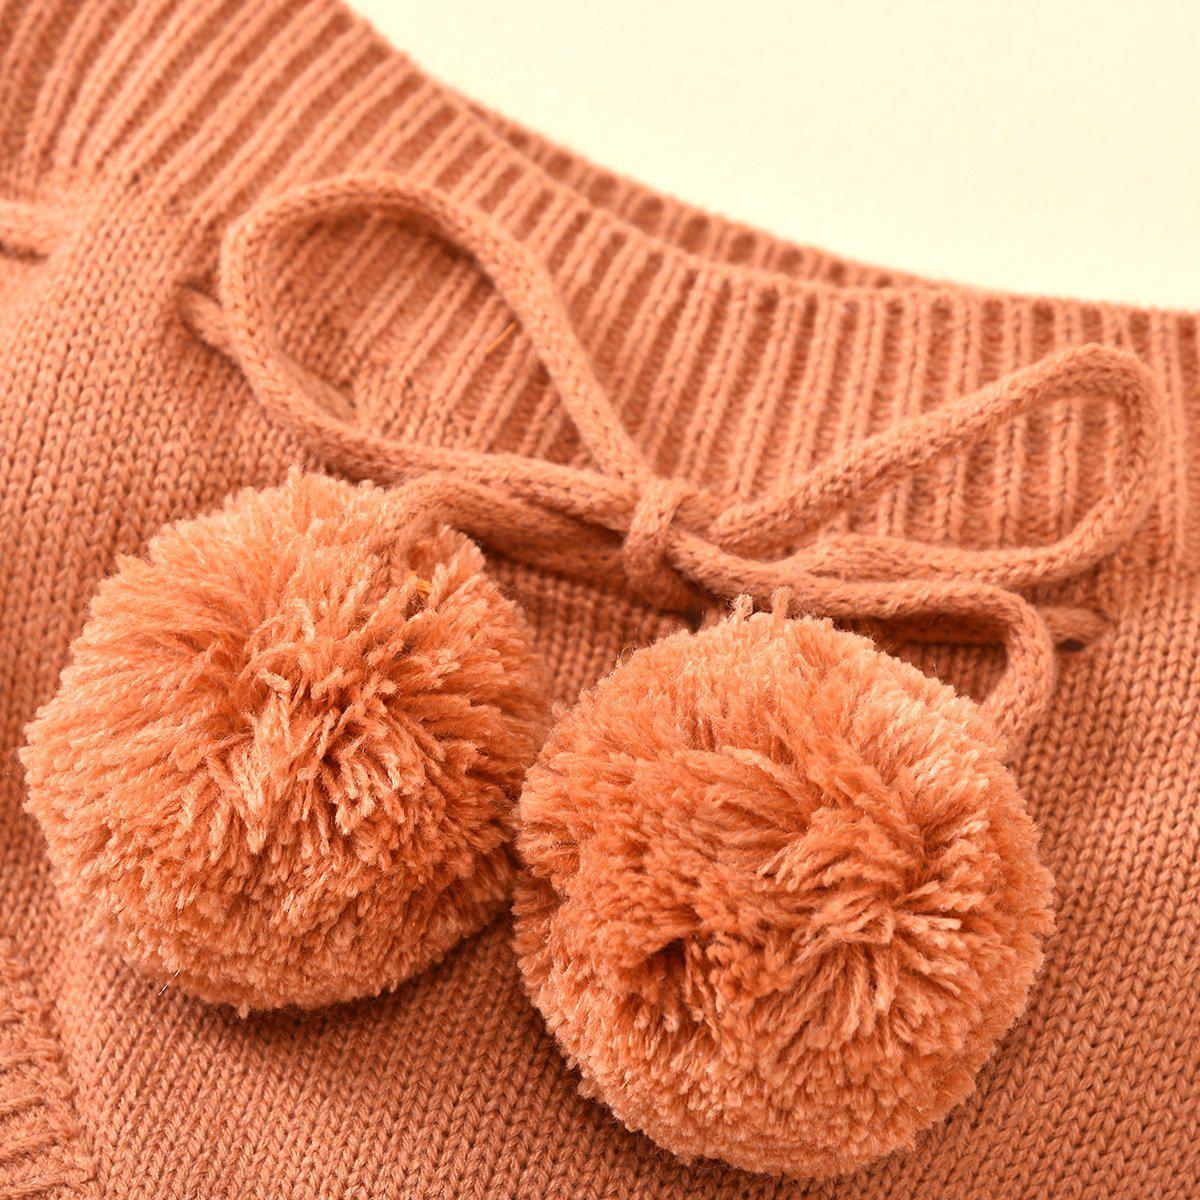 Baby Knitted Shorts Pawlulu